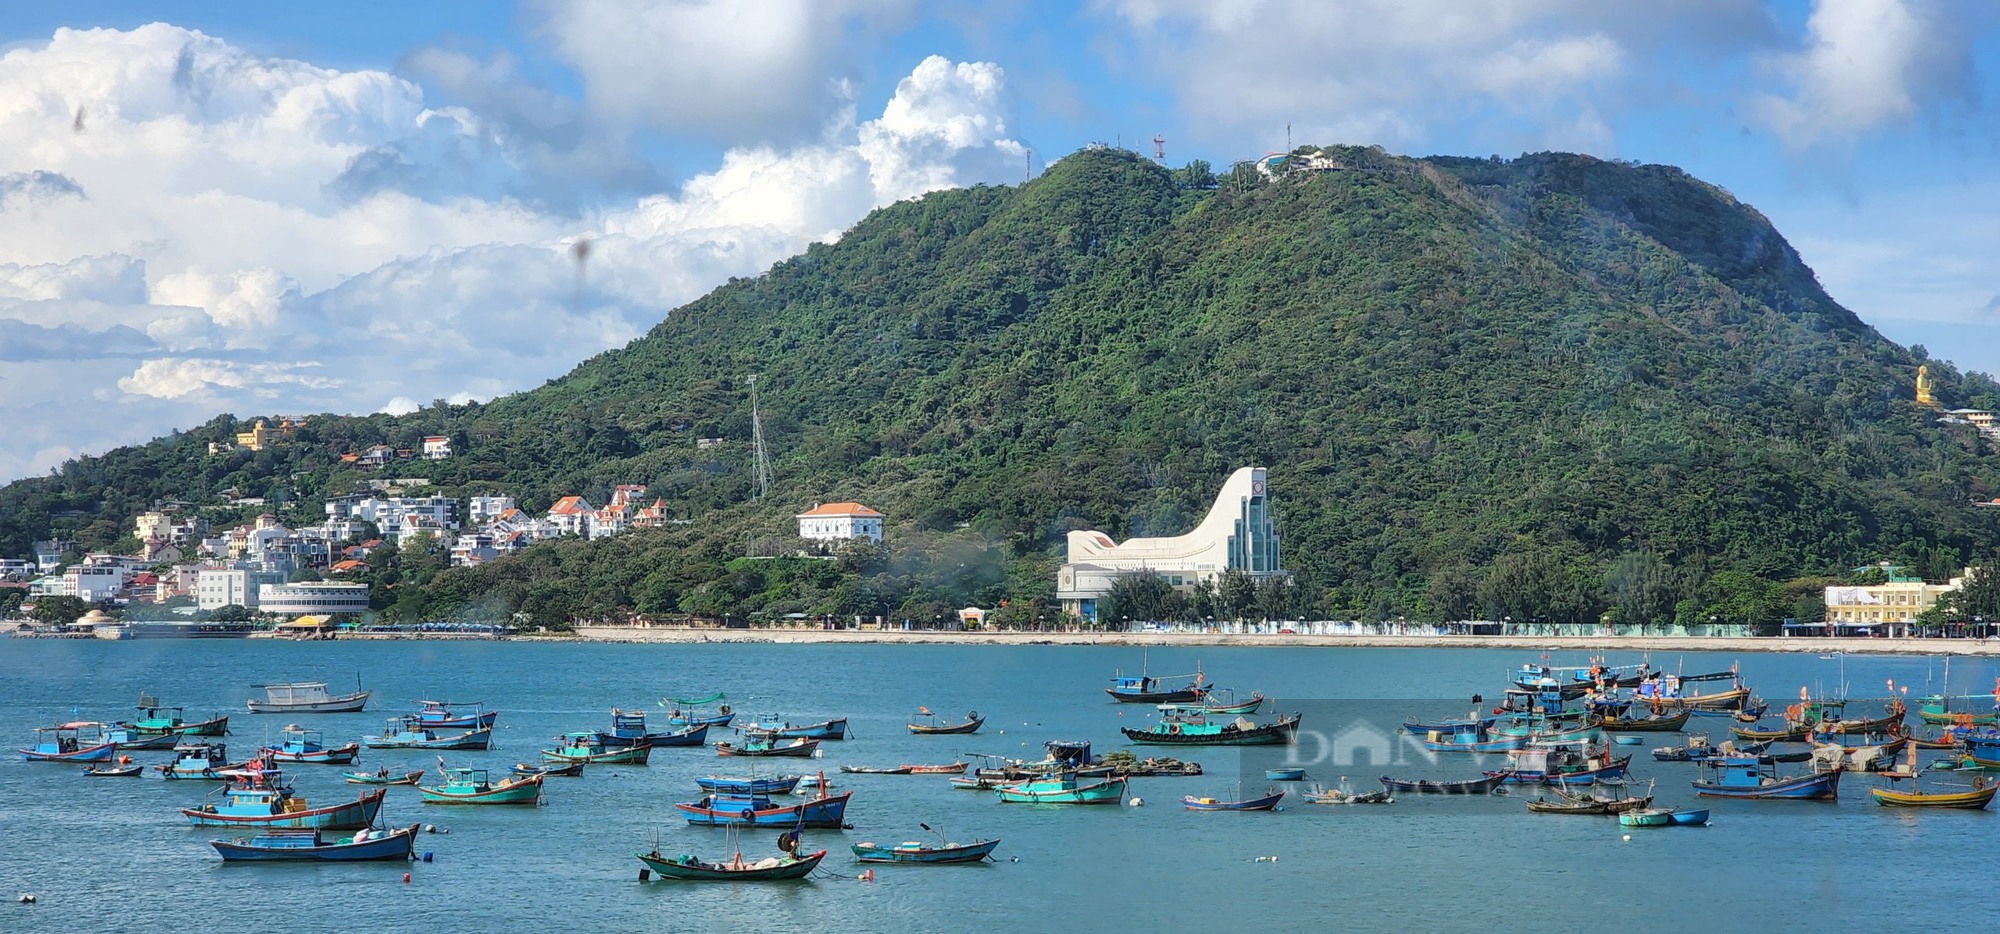 Không phải TP.HCM, Hà Nội hay Đà Nẵng, đây mới là TP du lịch được người Việt yêu thích nhất - Ảnh 1.